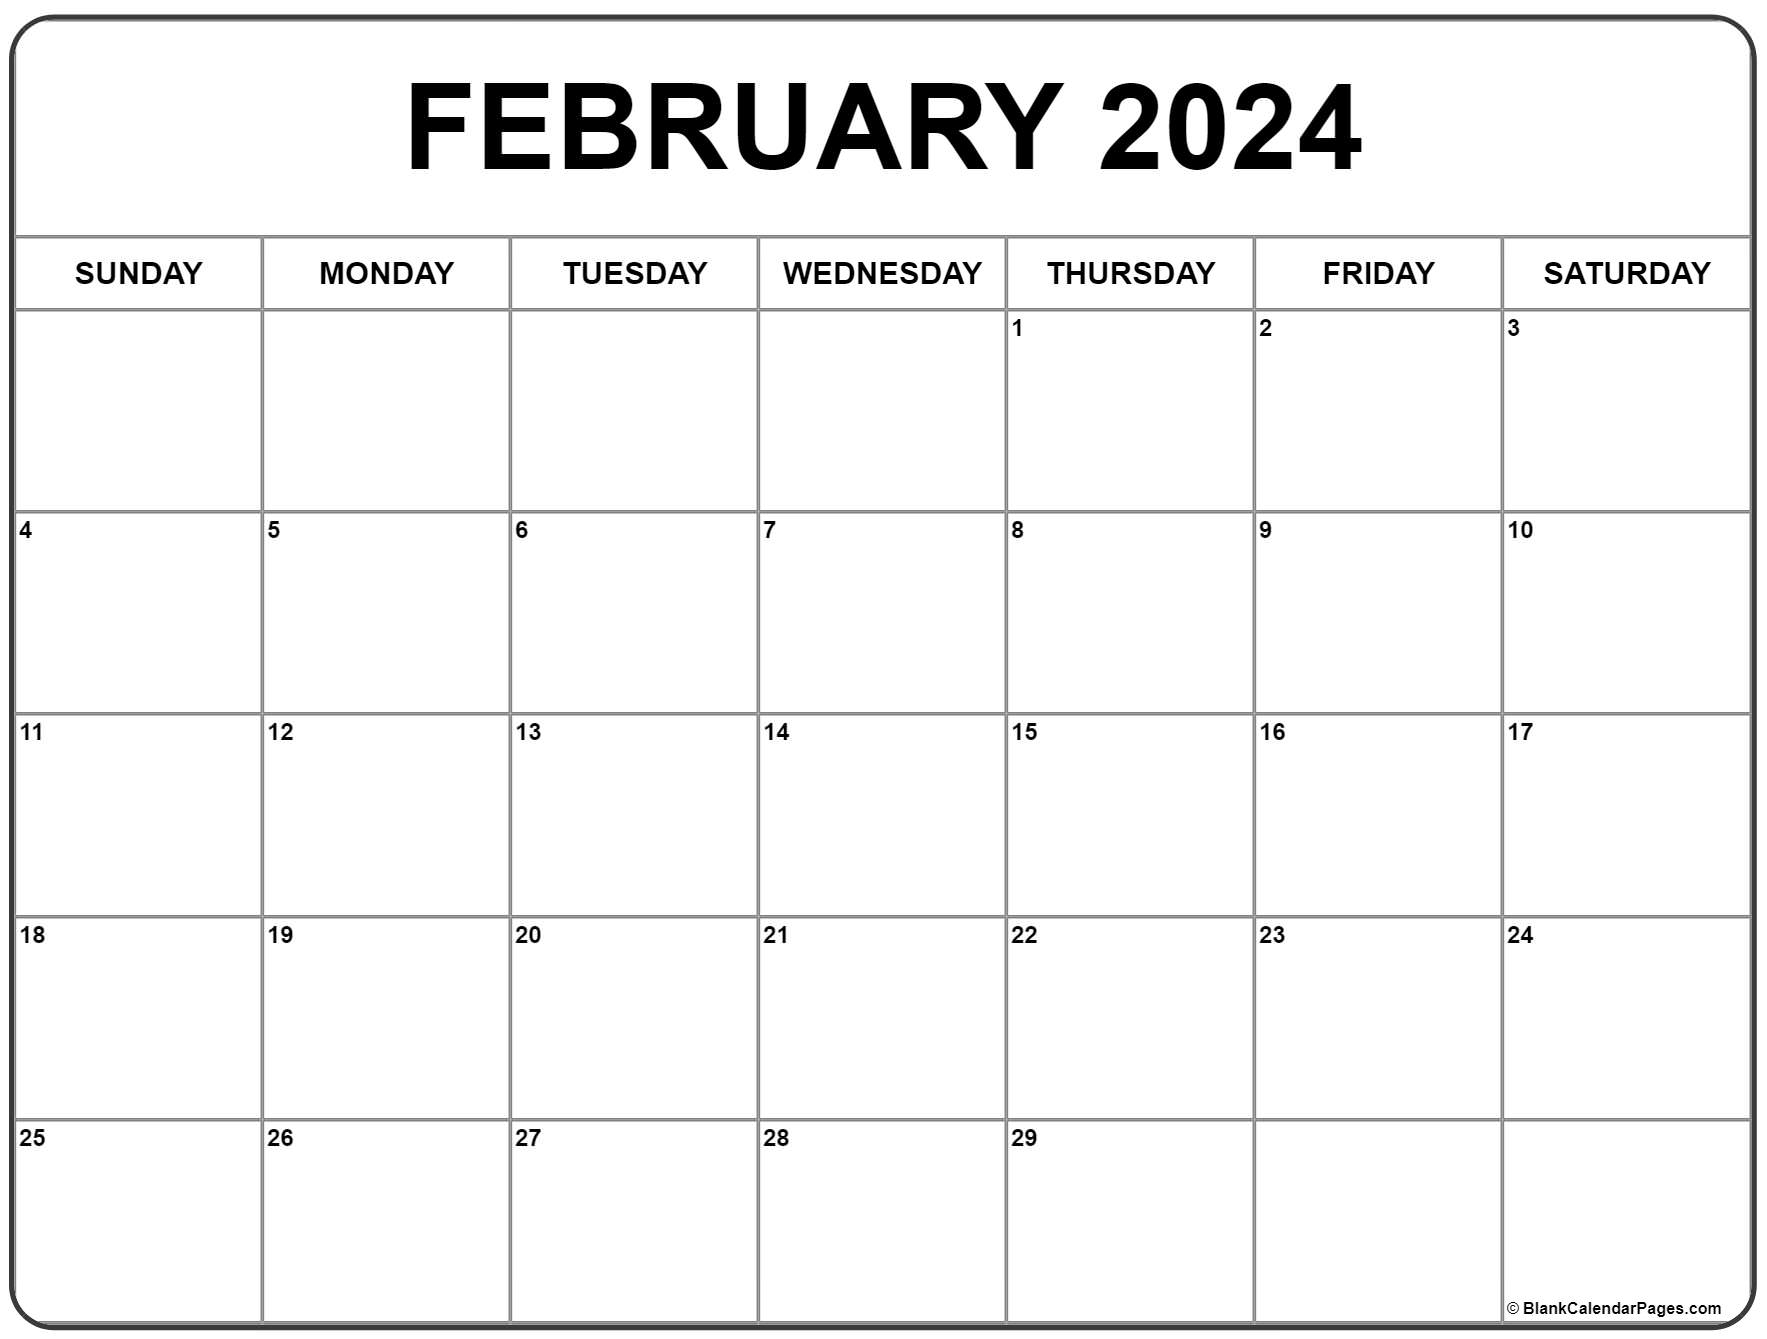 February 2024 Calendar | Free Printable Calendar for Free Printable Calendar February 2024